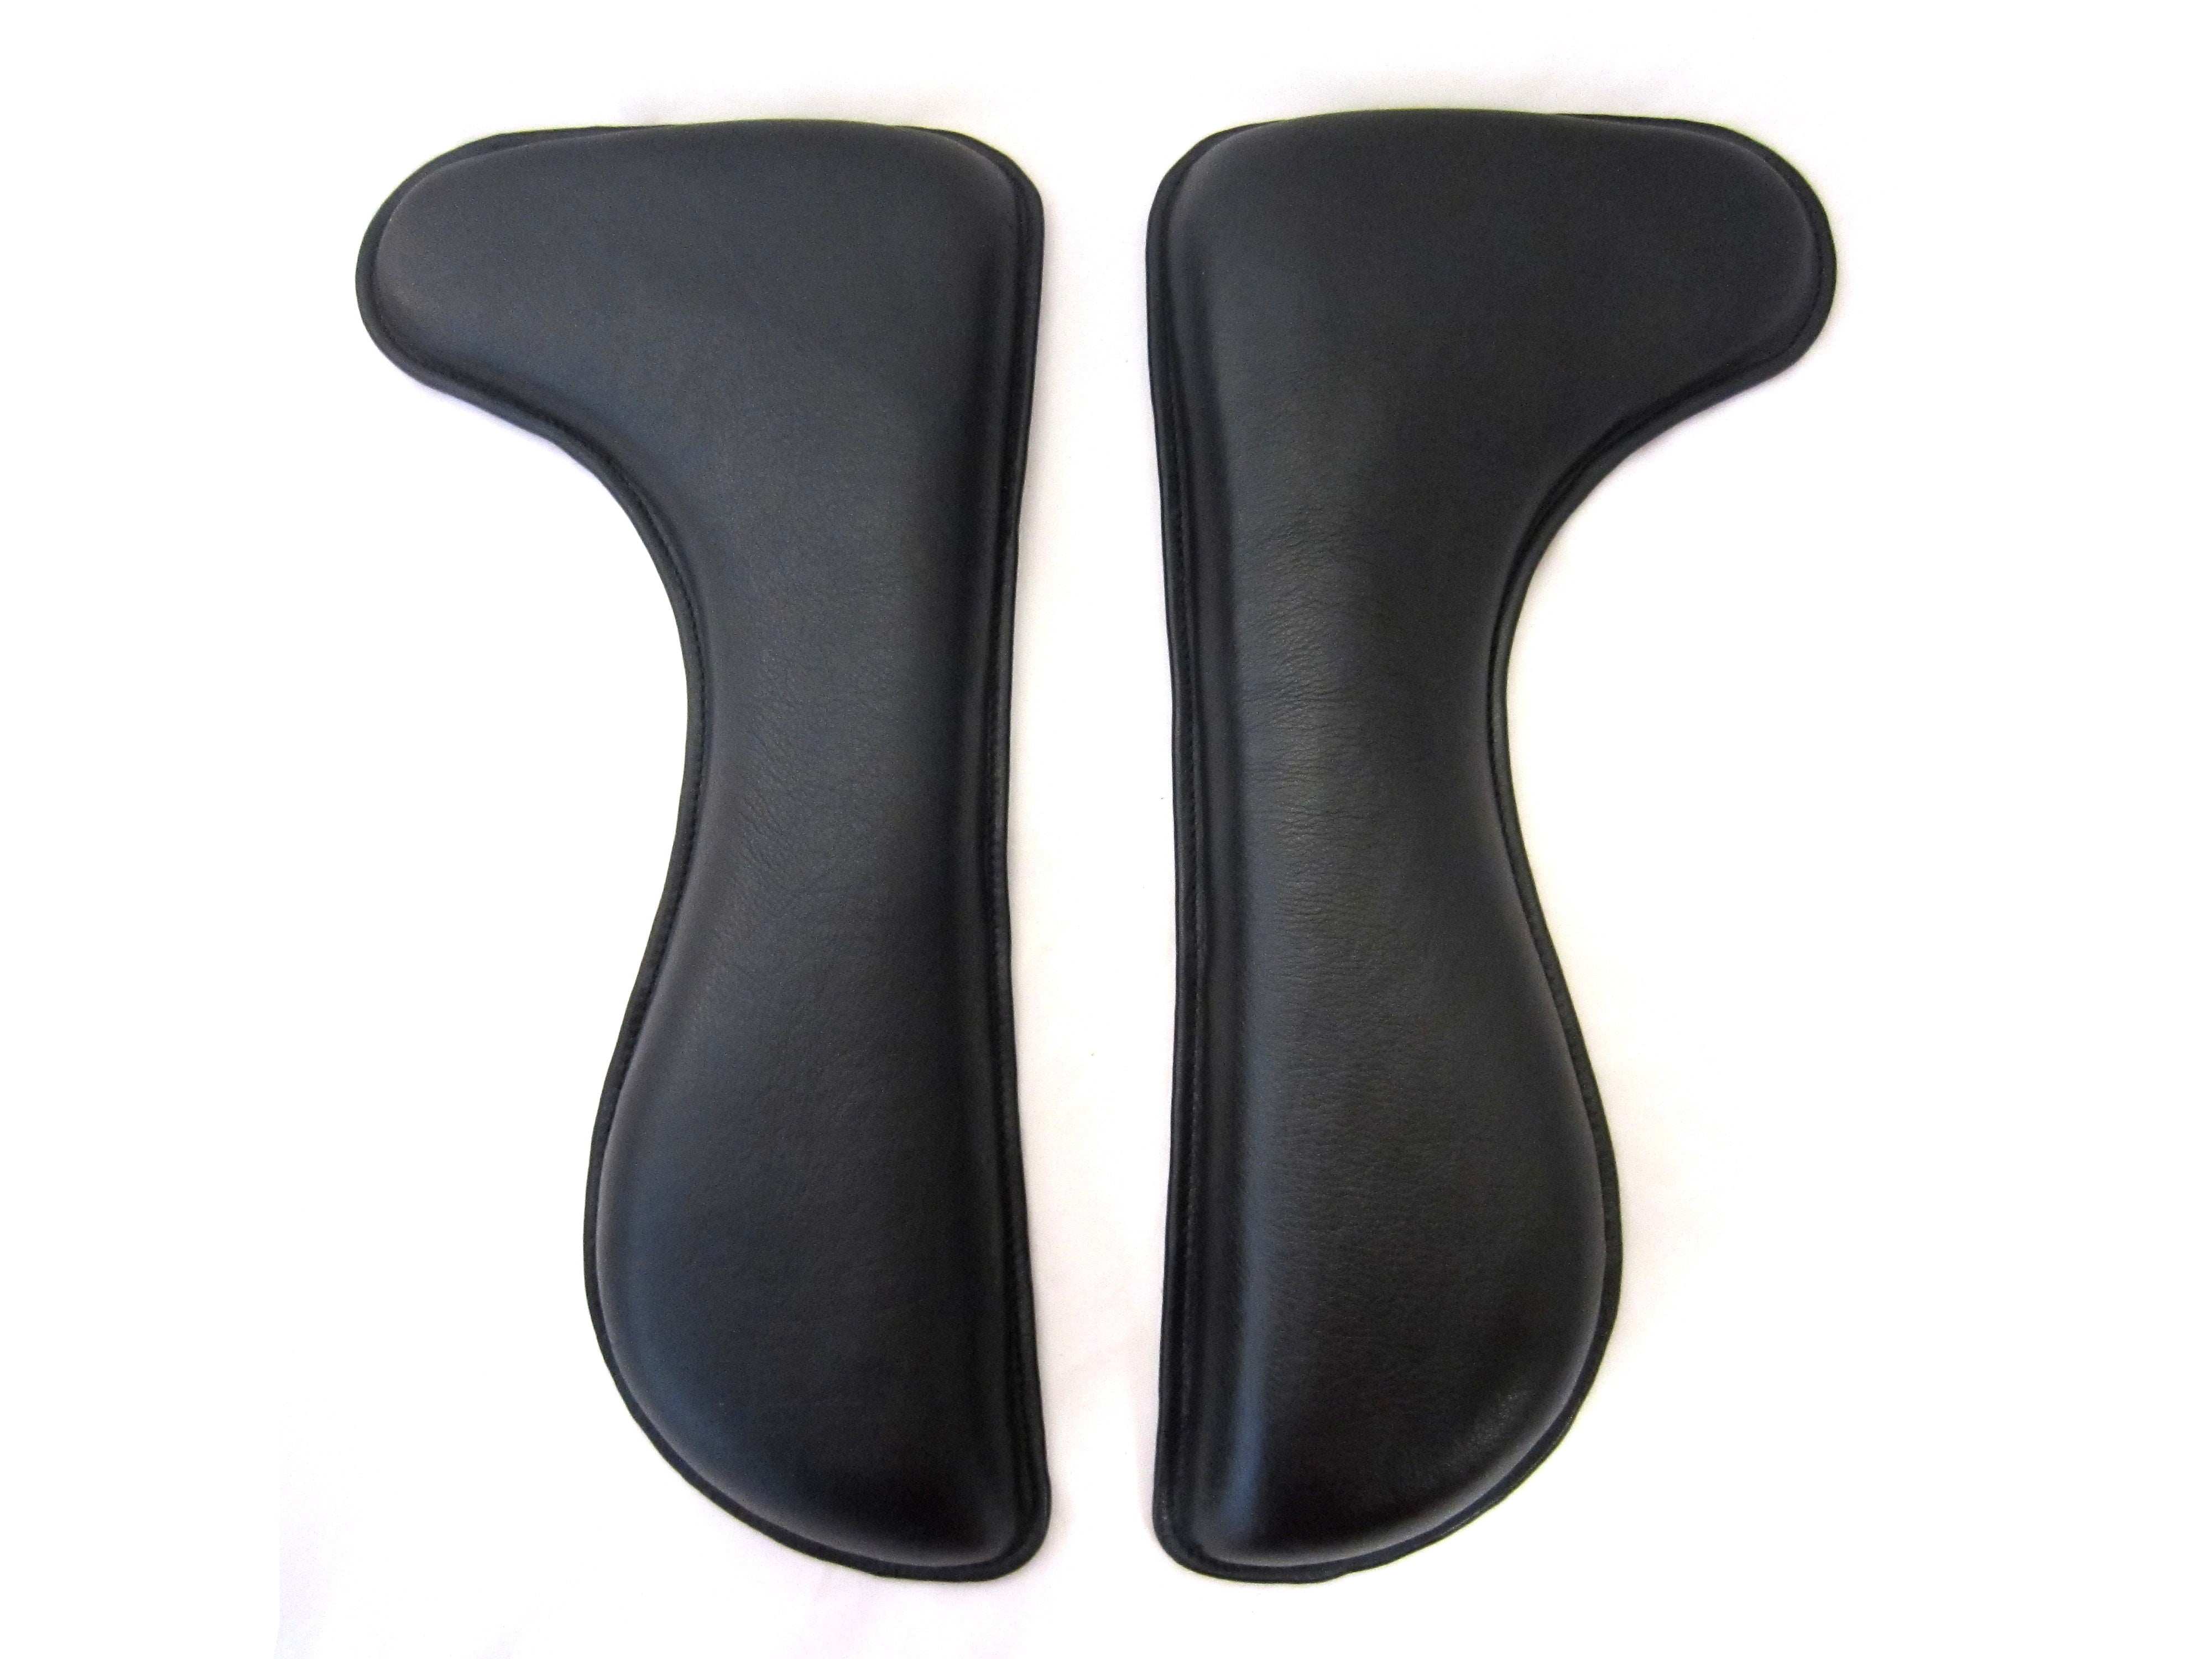 5-4-4 cm front raised Velcro cushion dressage form; Panels/saddle cushions